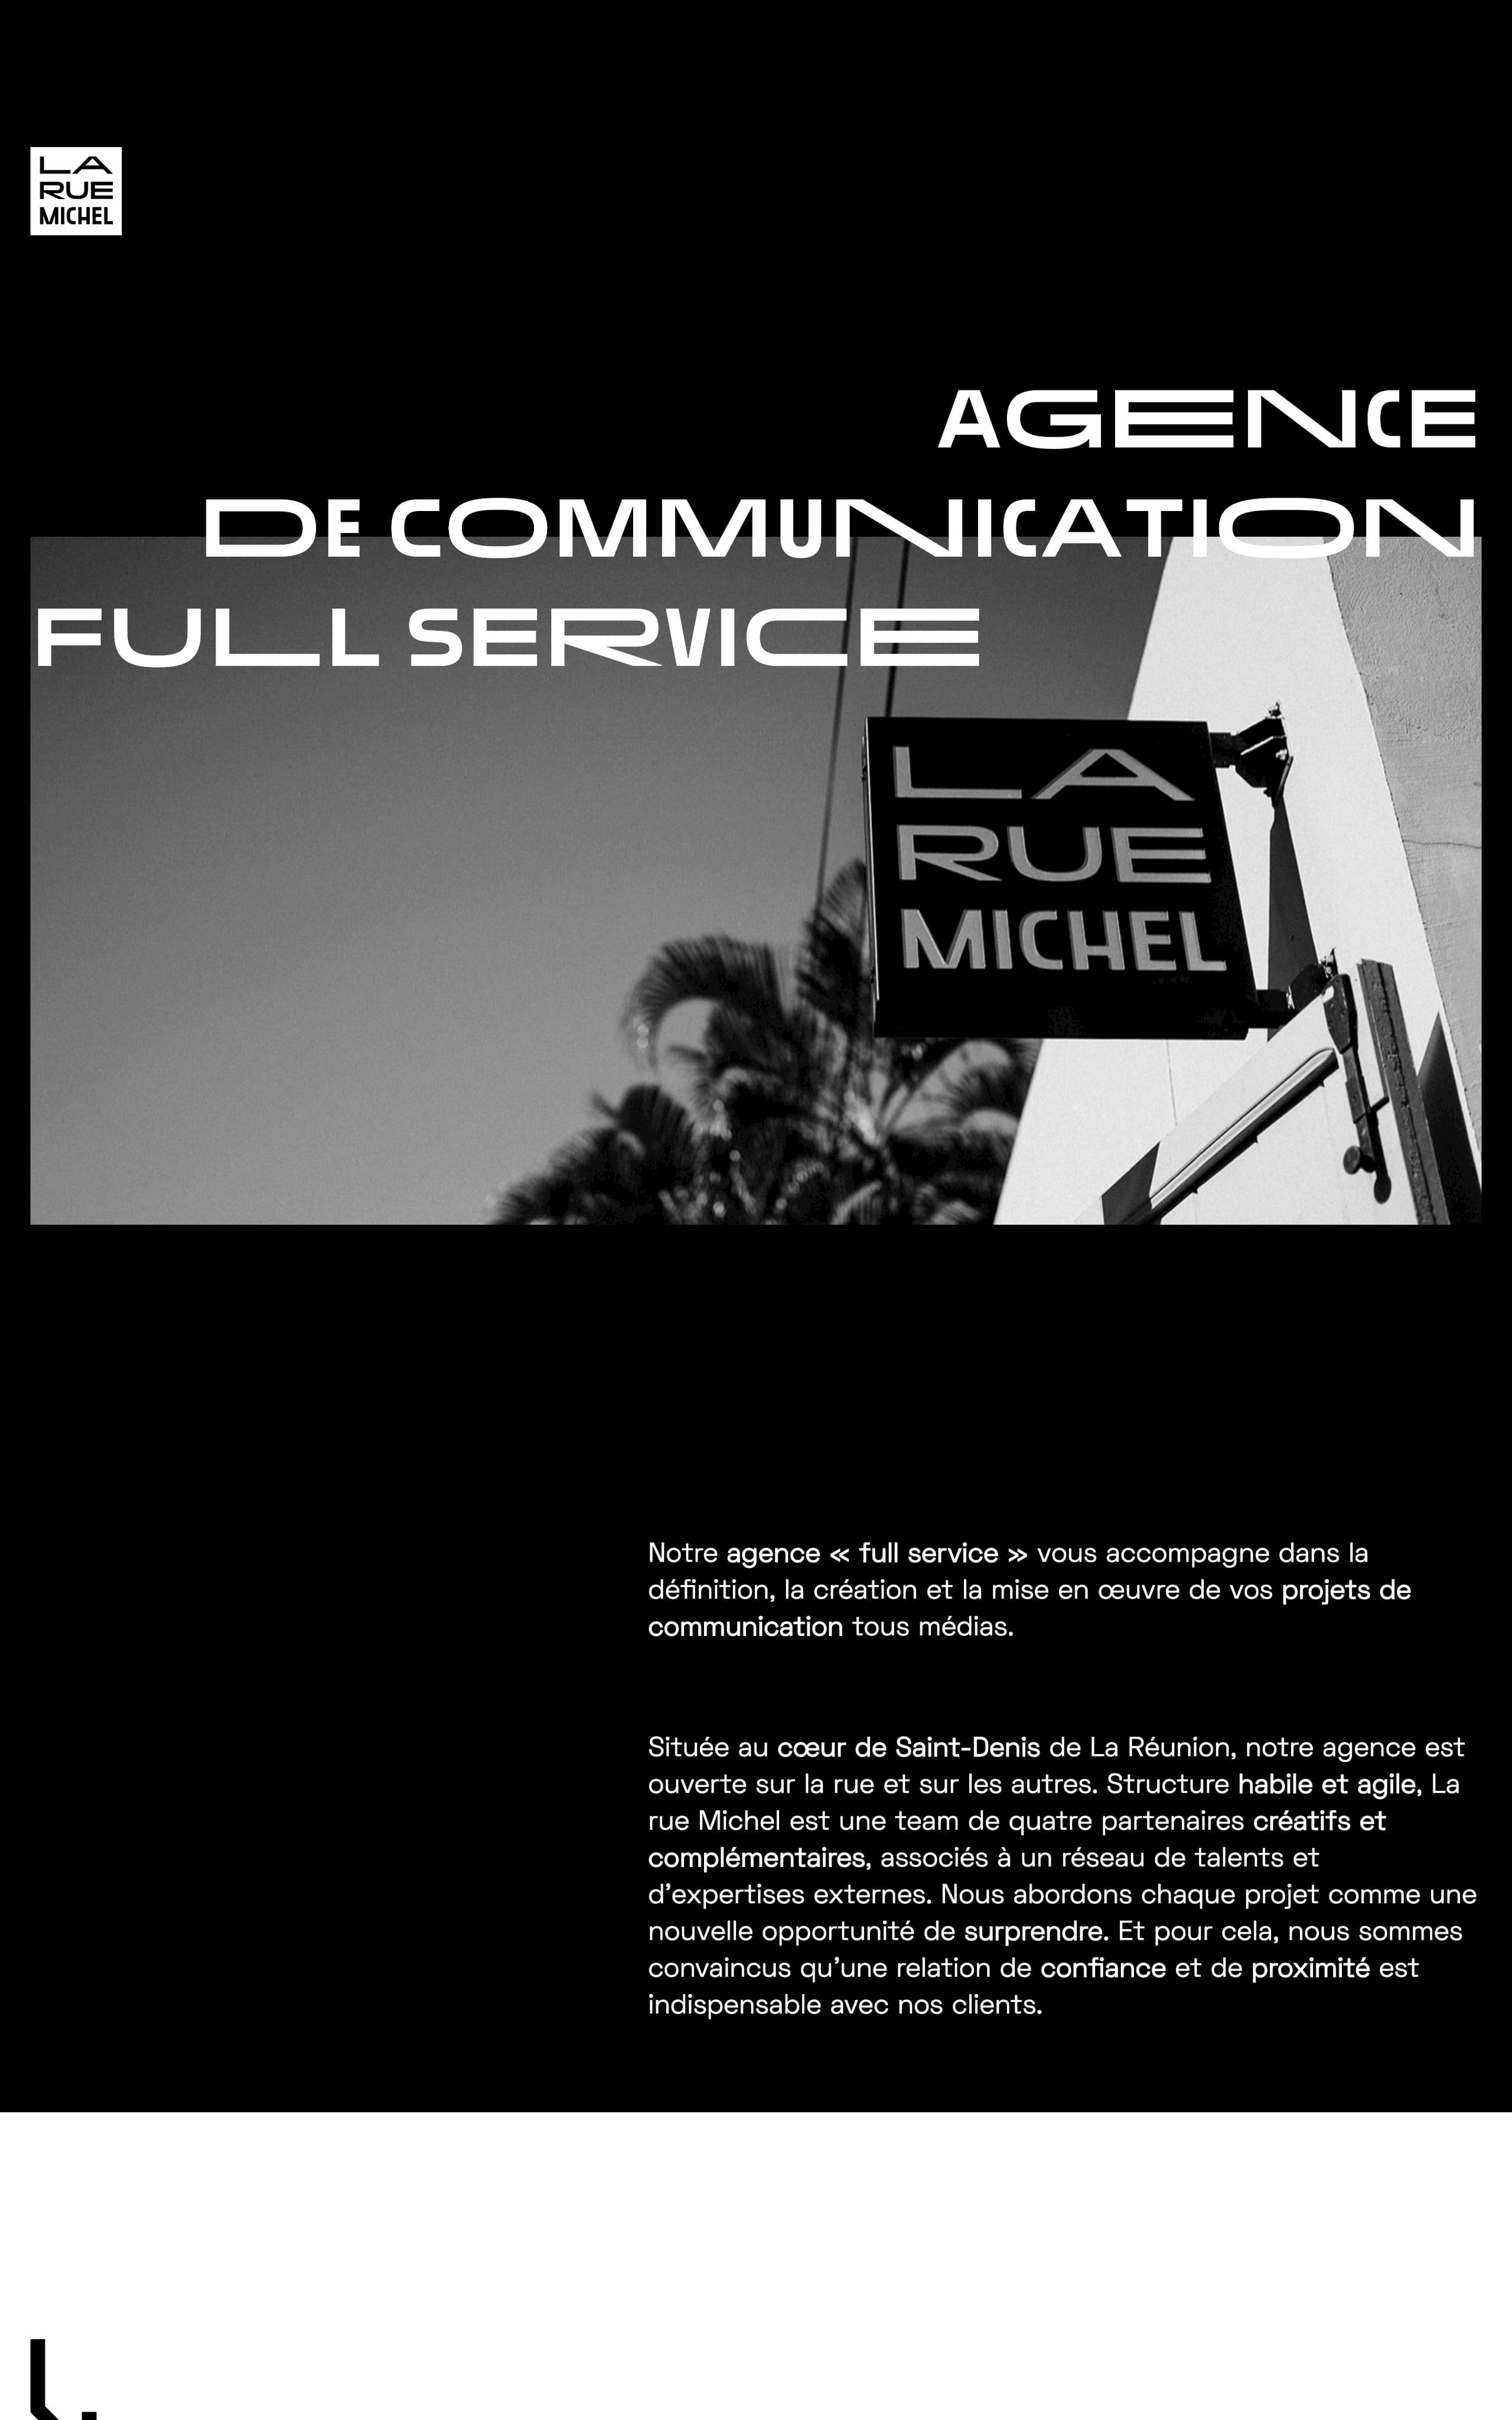 La rue Michel Website Screenshot